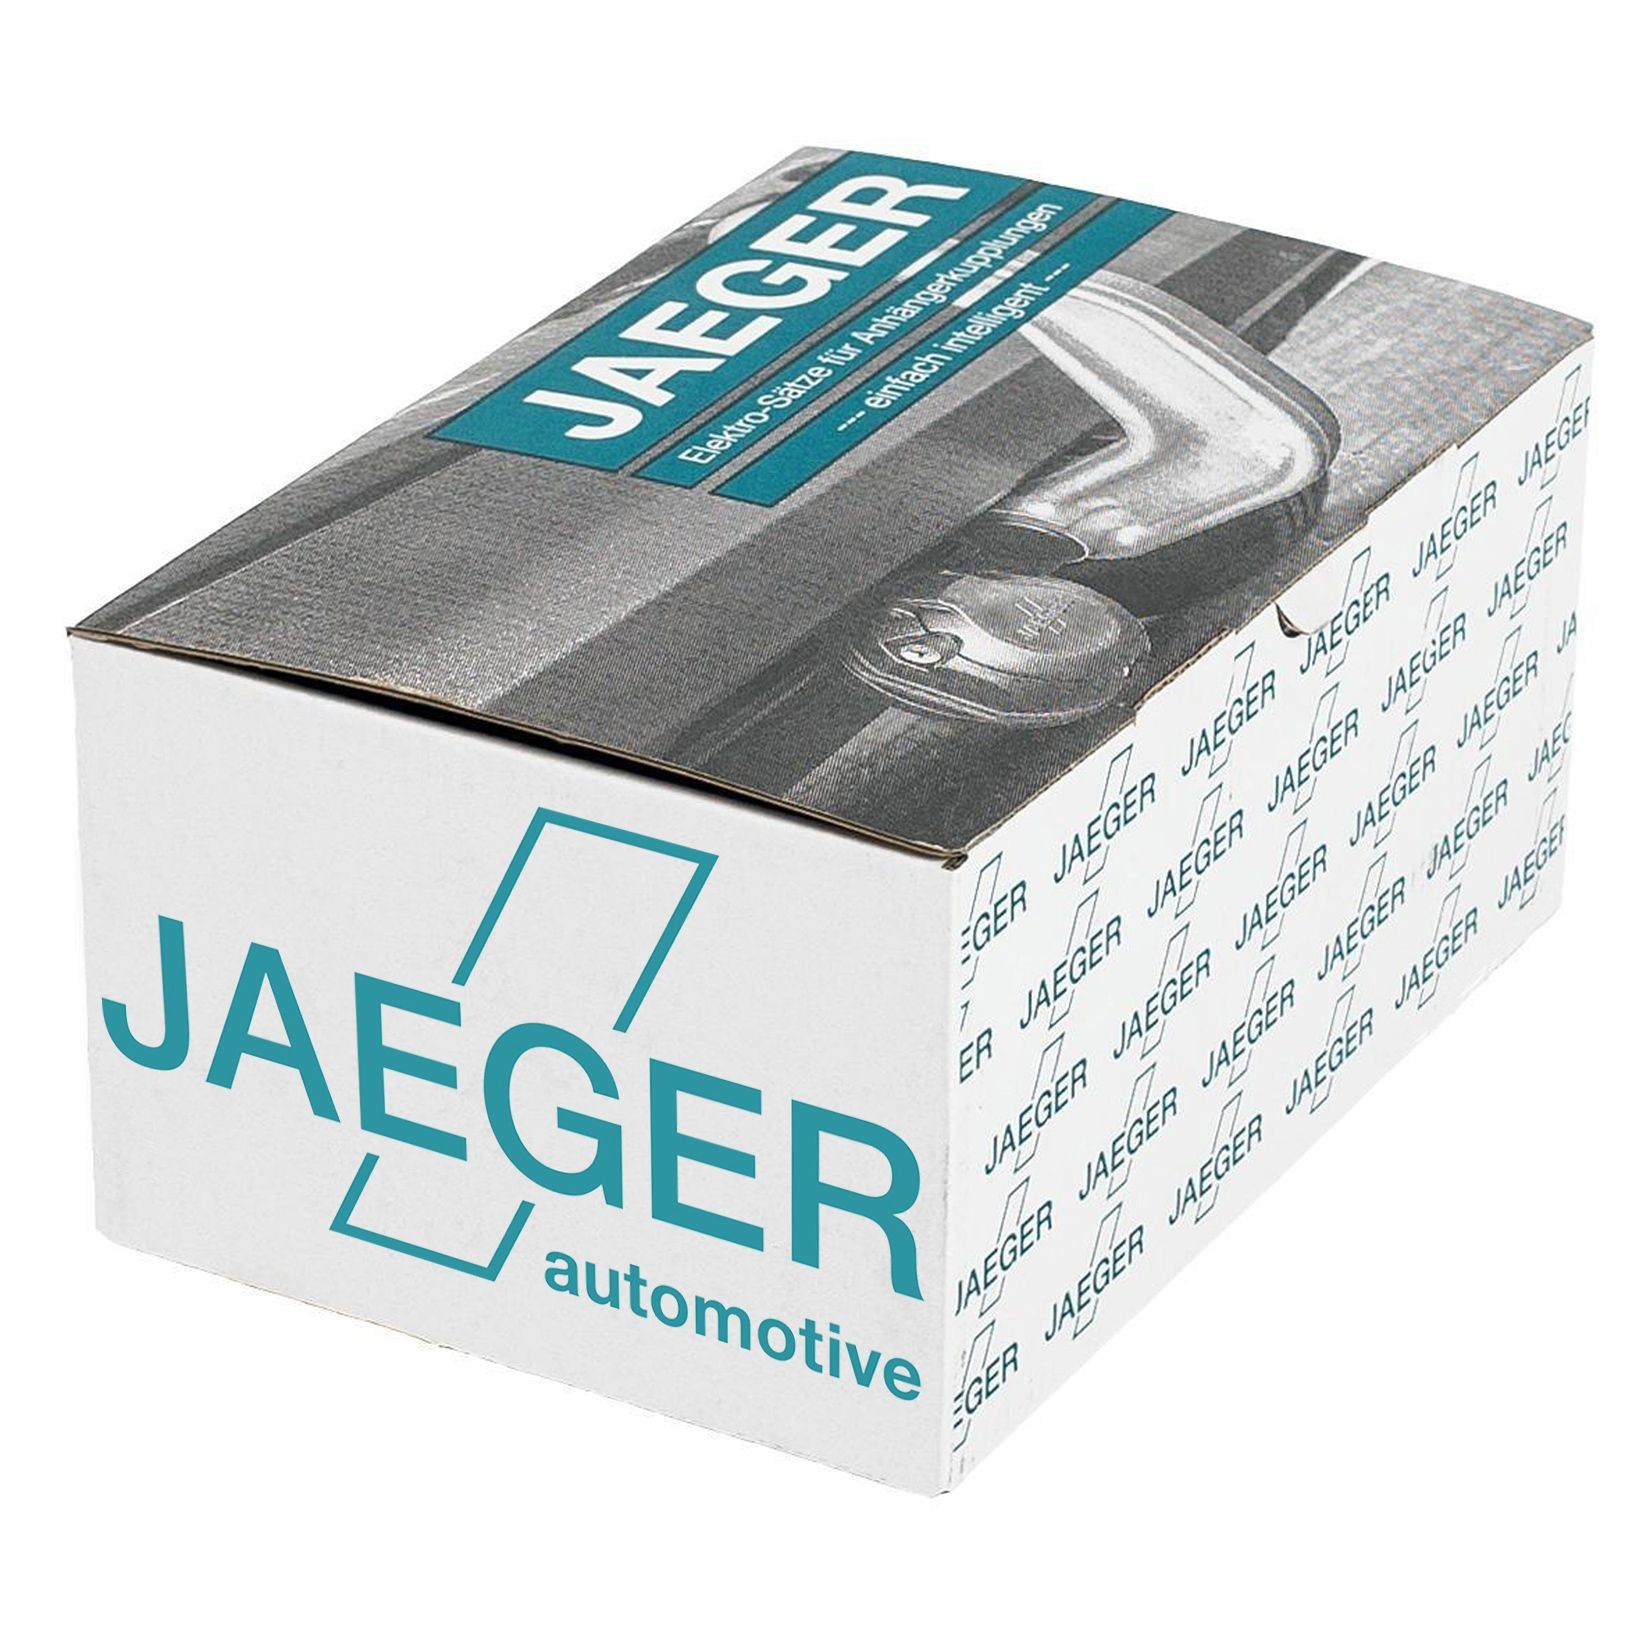 BMW Towbar electric kit JAEGER 21020527 at a good price